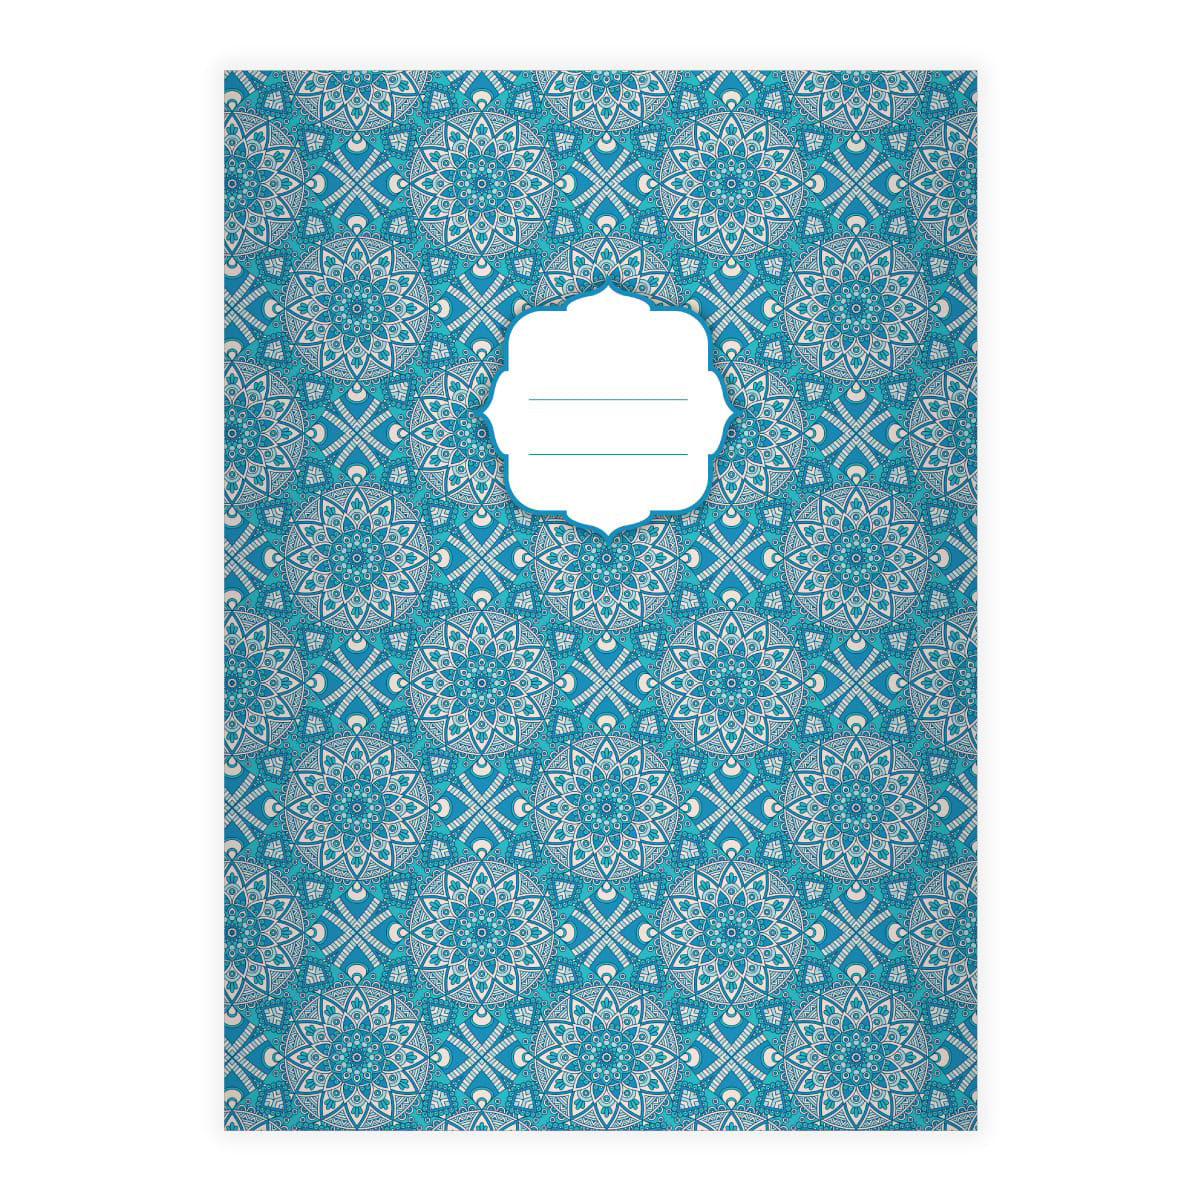 Kartenkaufrausch: Schickes Boho Stil Notizheft/ aus unserer Designer Papeterie in blau